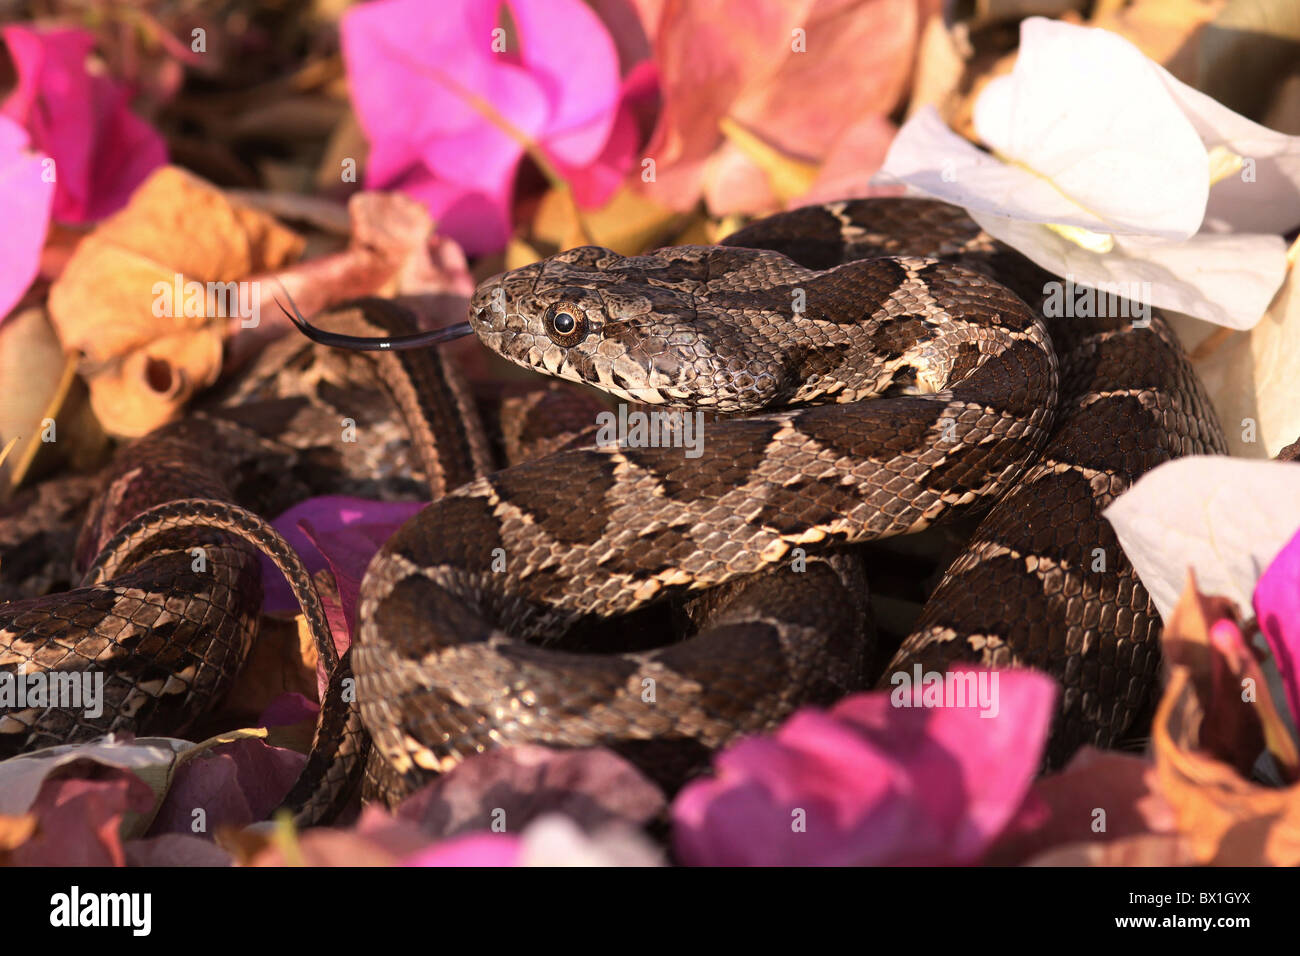 Coin-marked Snake (Hemorrhois nummifer syn Coluber nummifer) AKA Asian Racer or Coin snake. Photographed in Israel In November Stock Photo